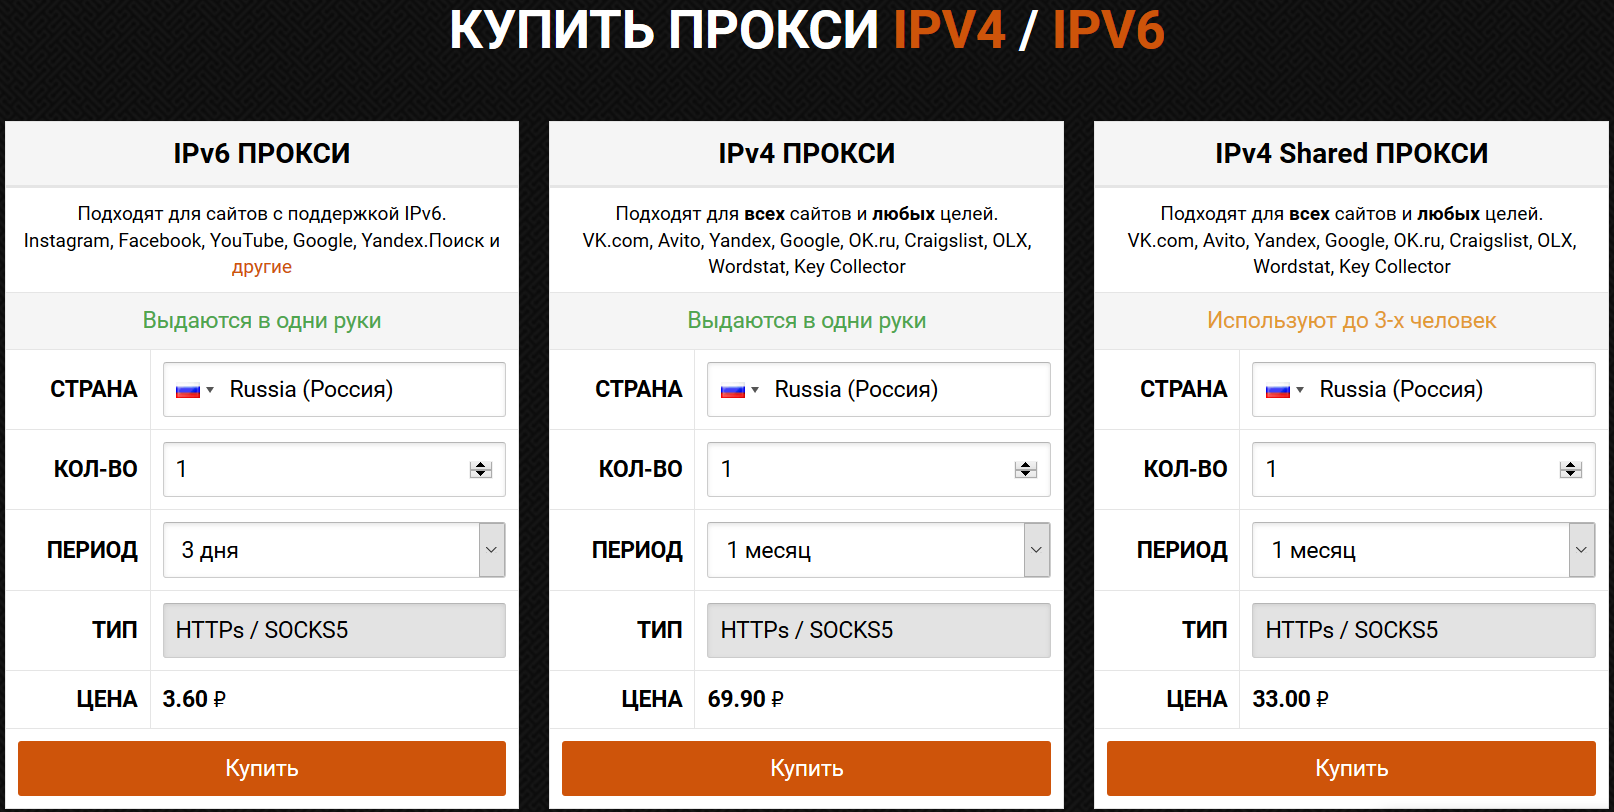 Прокси ipv4 mobileproxy. Ipv6 прокси. Персональные прокси. Прокси ipv4 и ipv6?. Ipv6 прокси пример.